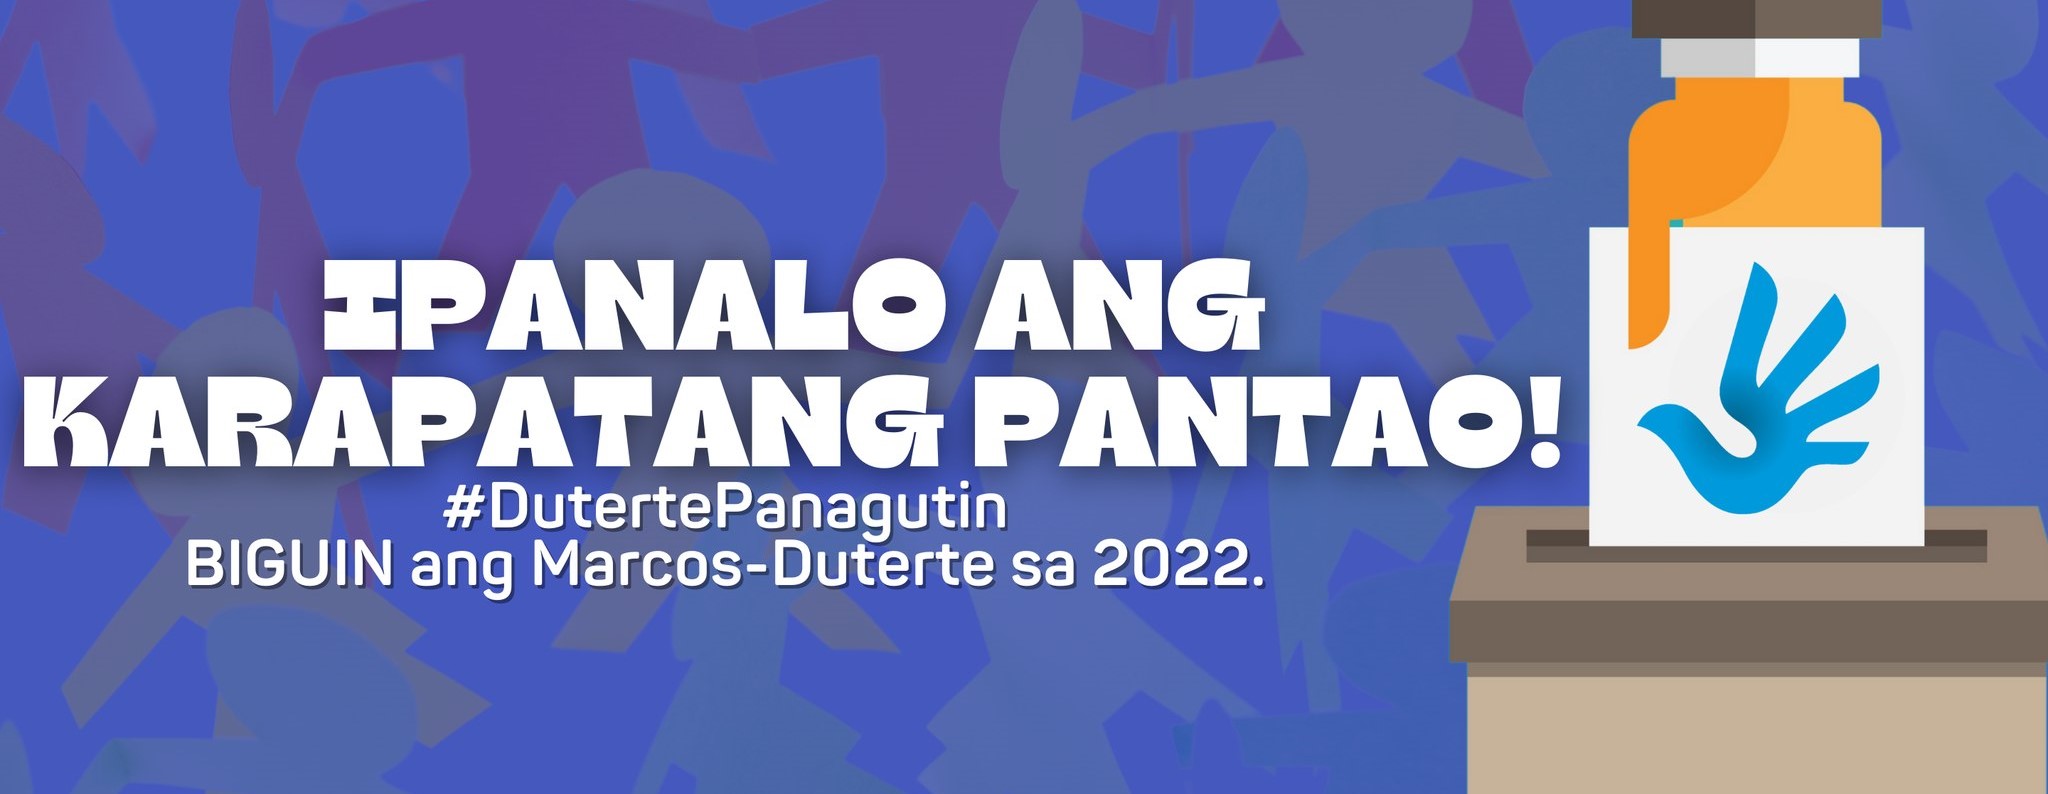 Banner: Ipanalo ang karapatang pantao